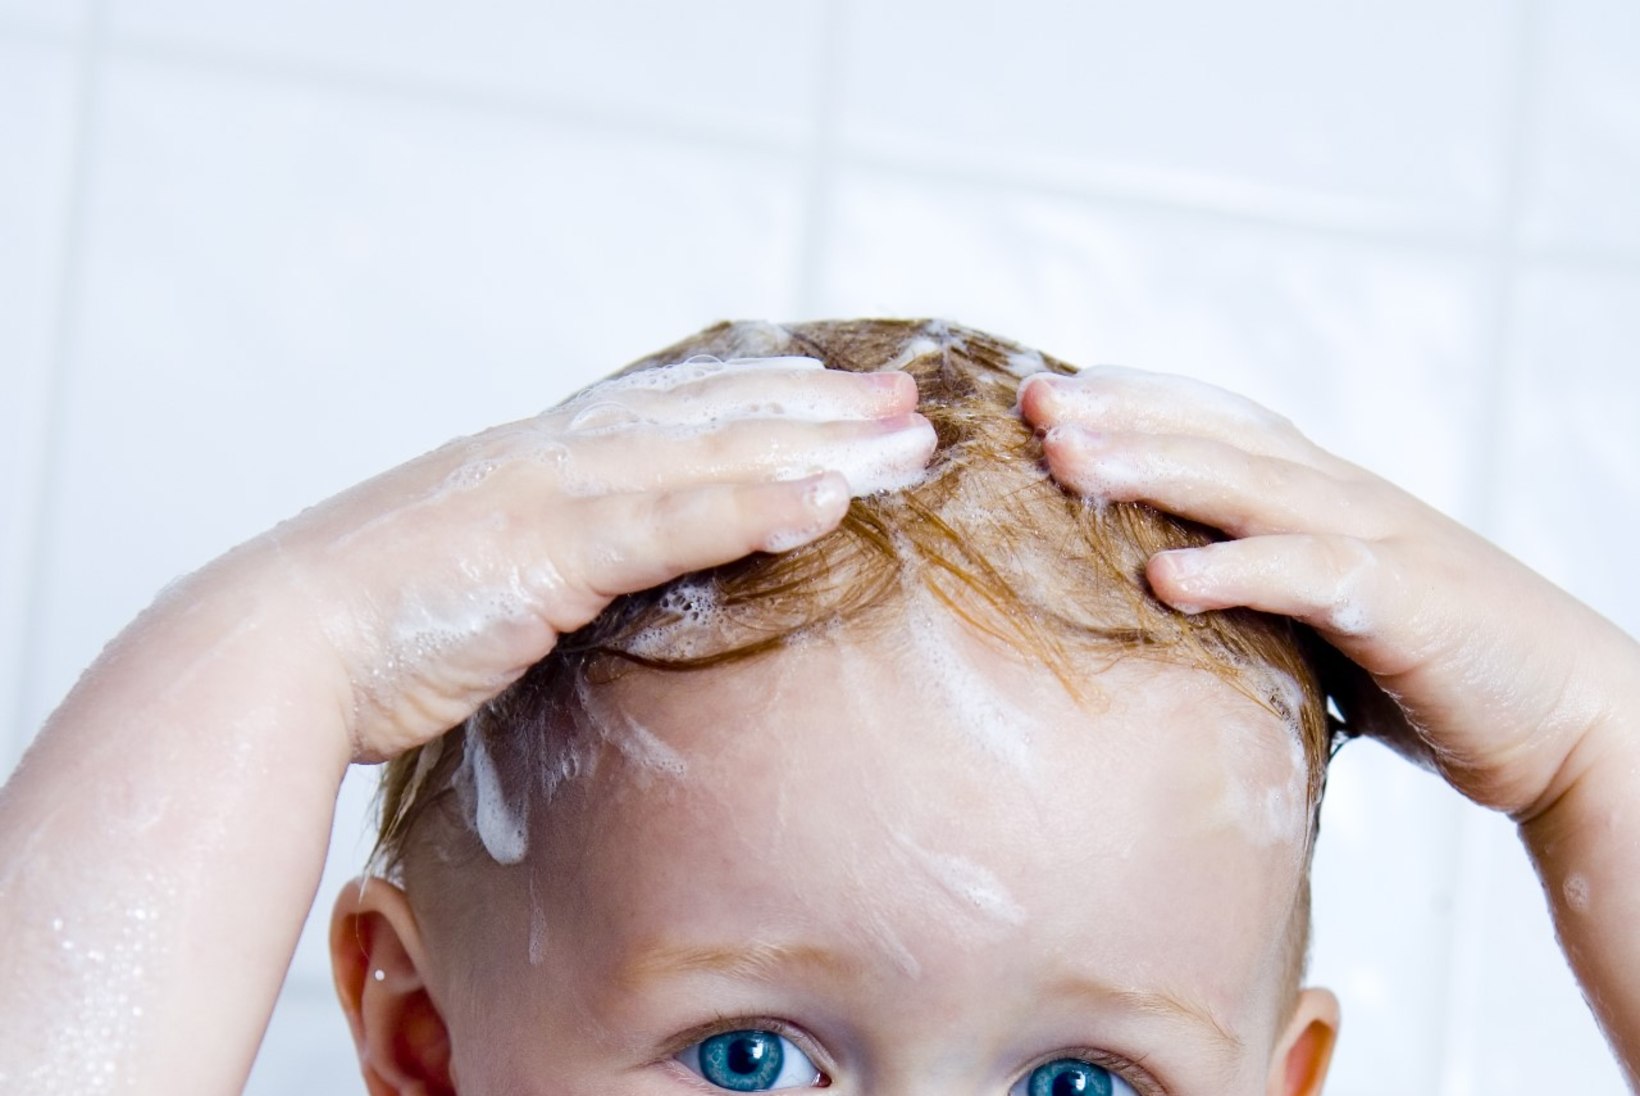 Kas sina tead, kuidas juukseid õigesti pesta?